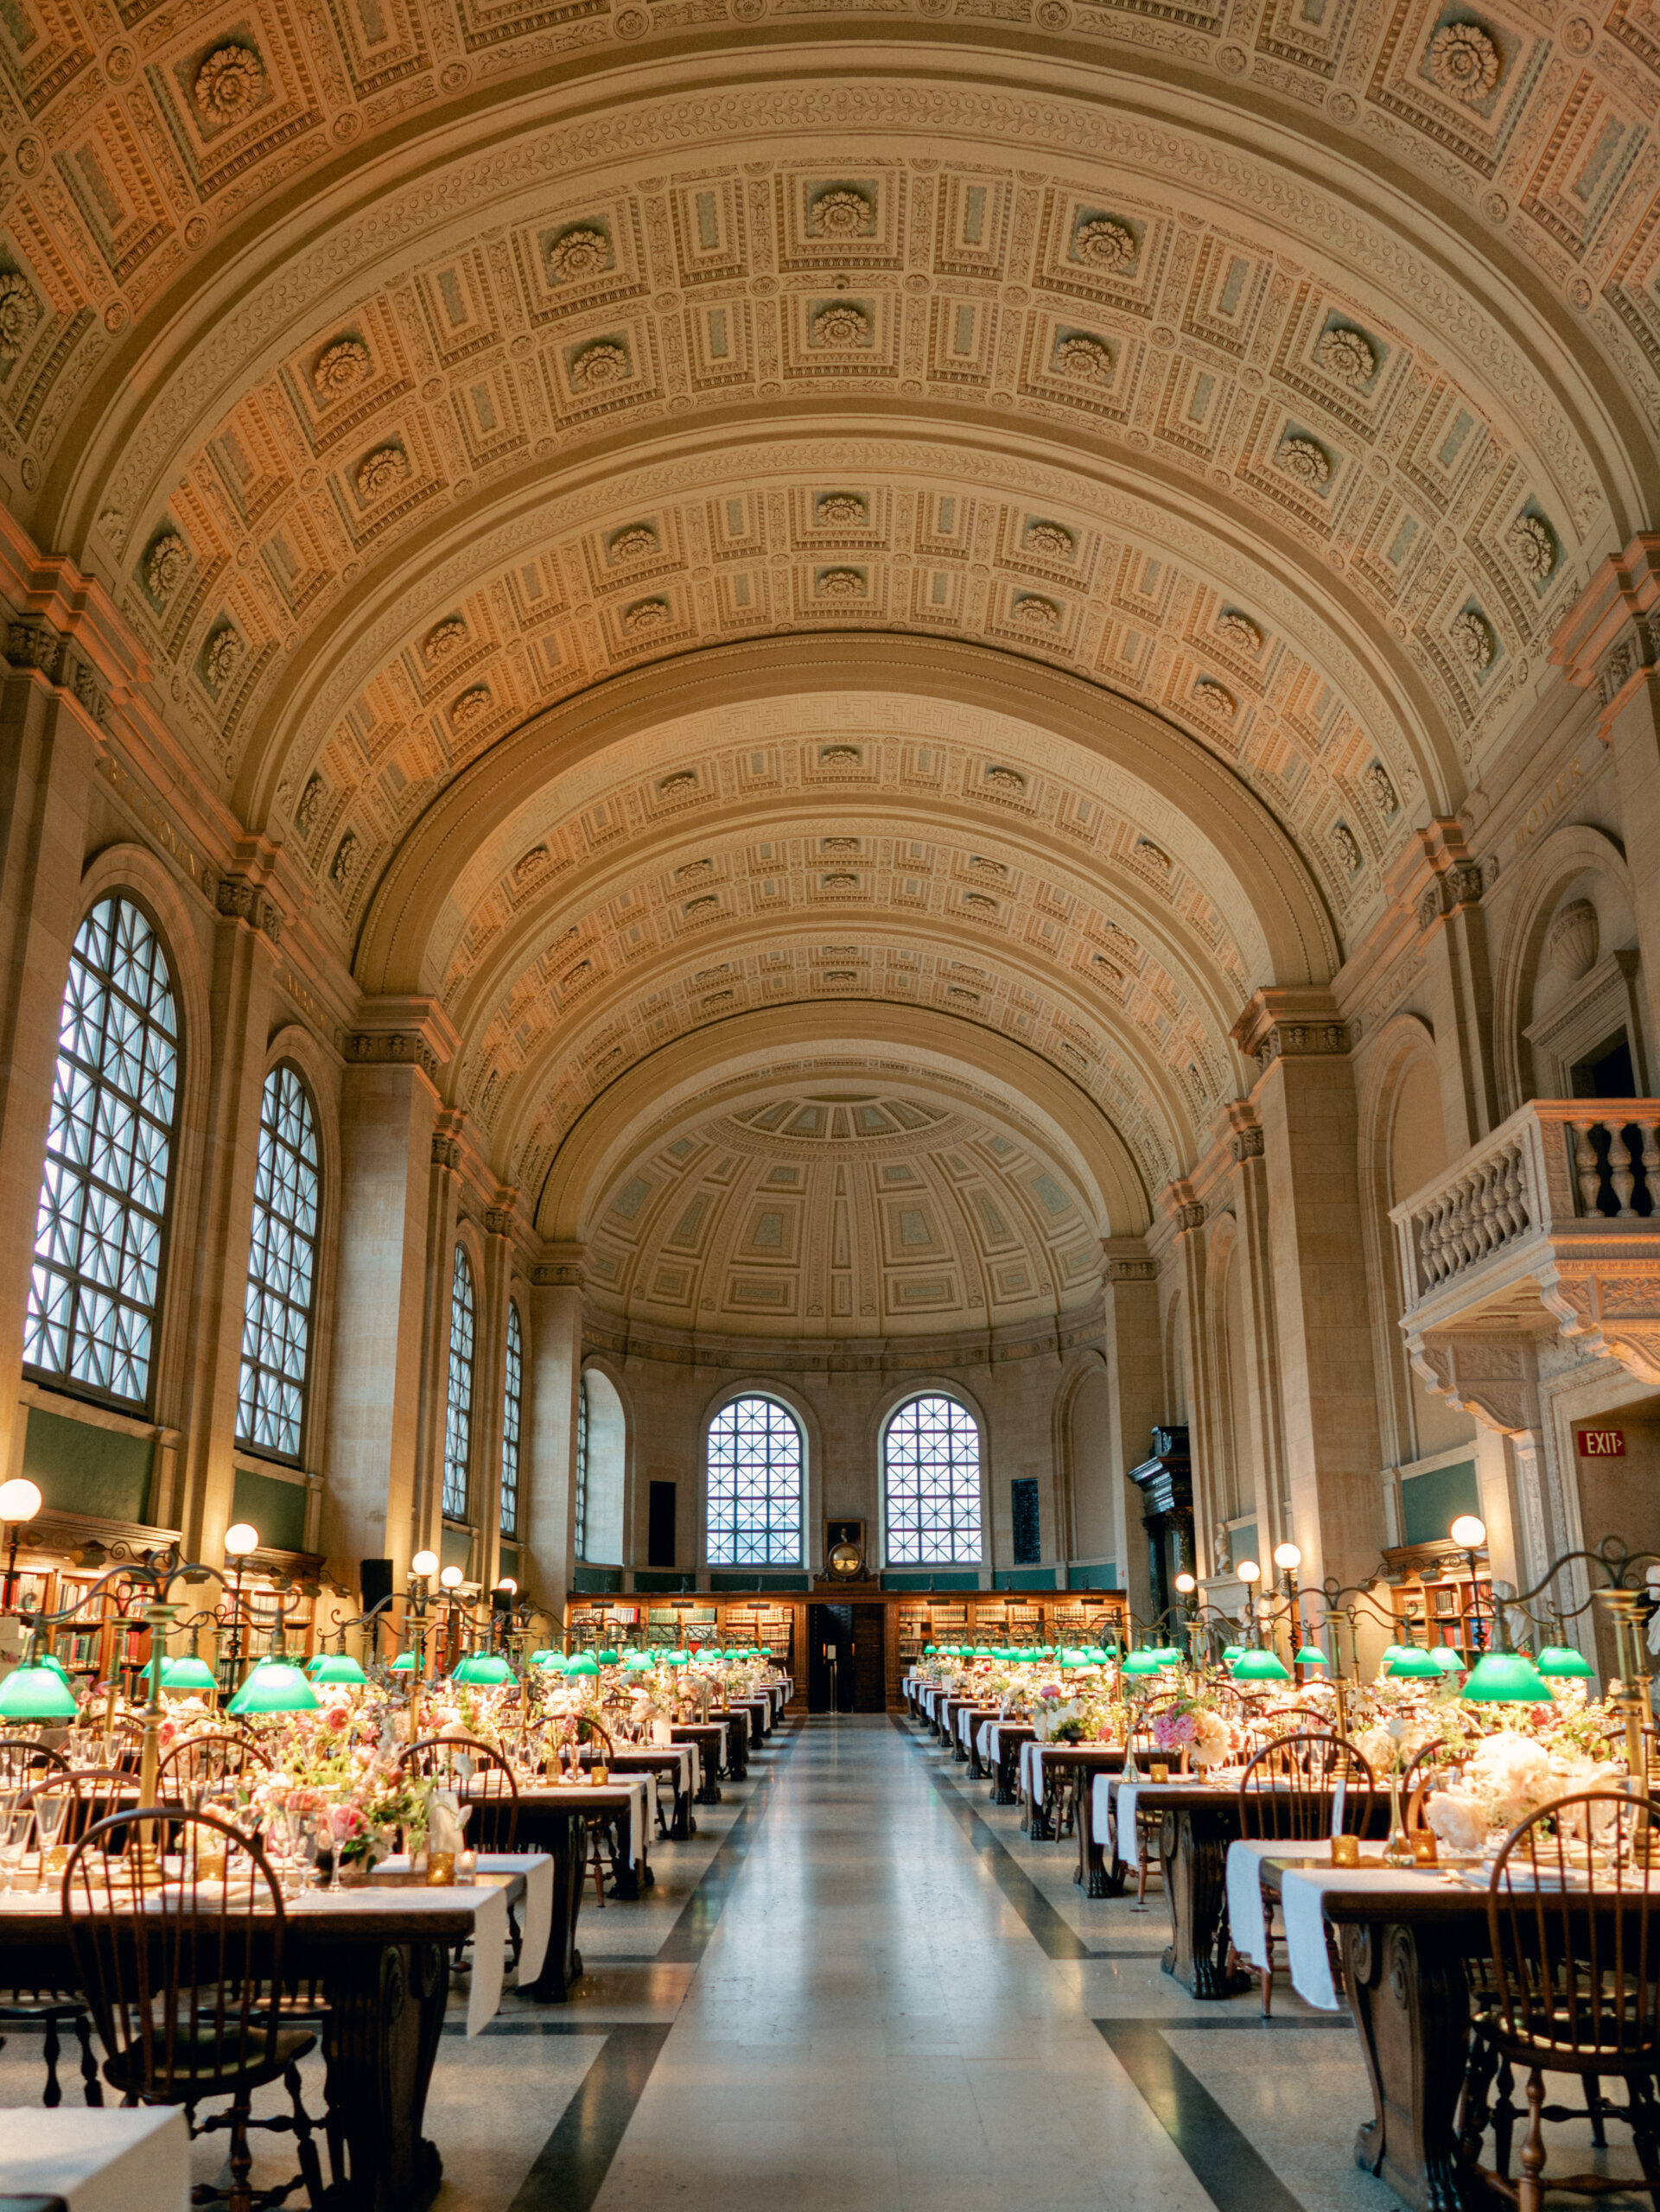 Boston Public Library Venue